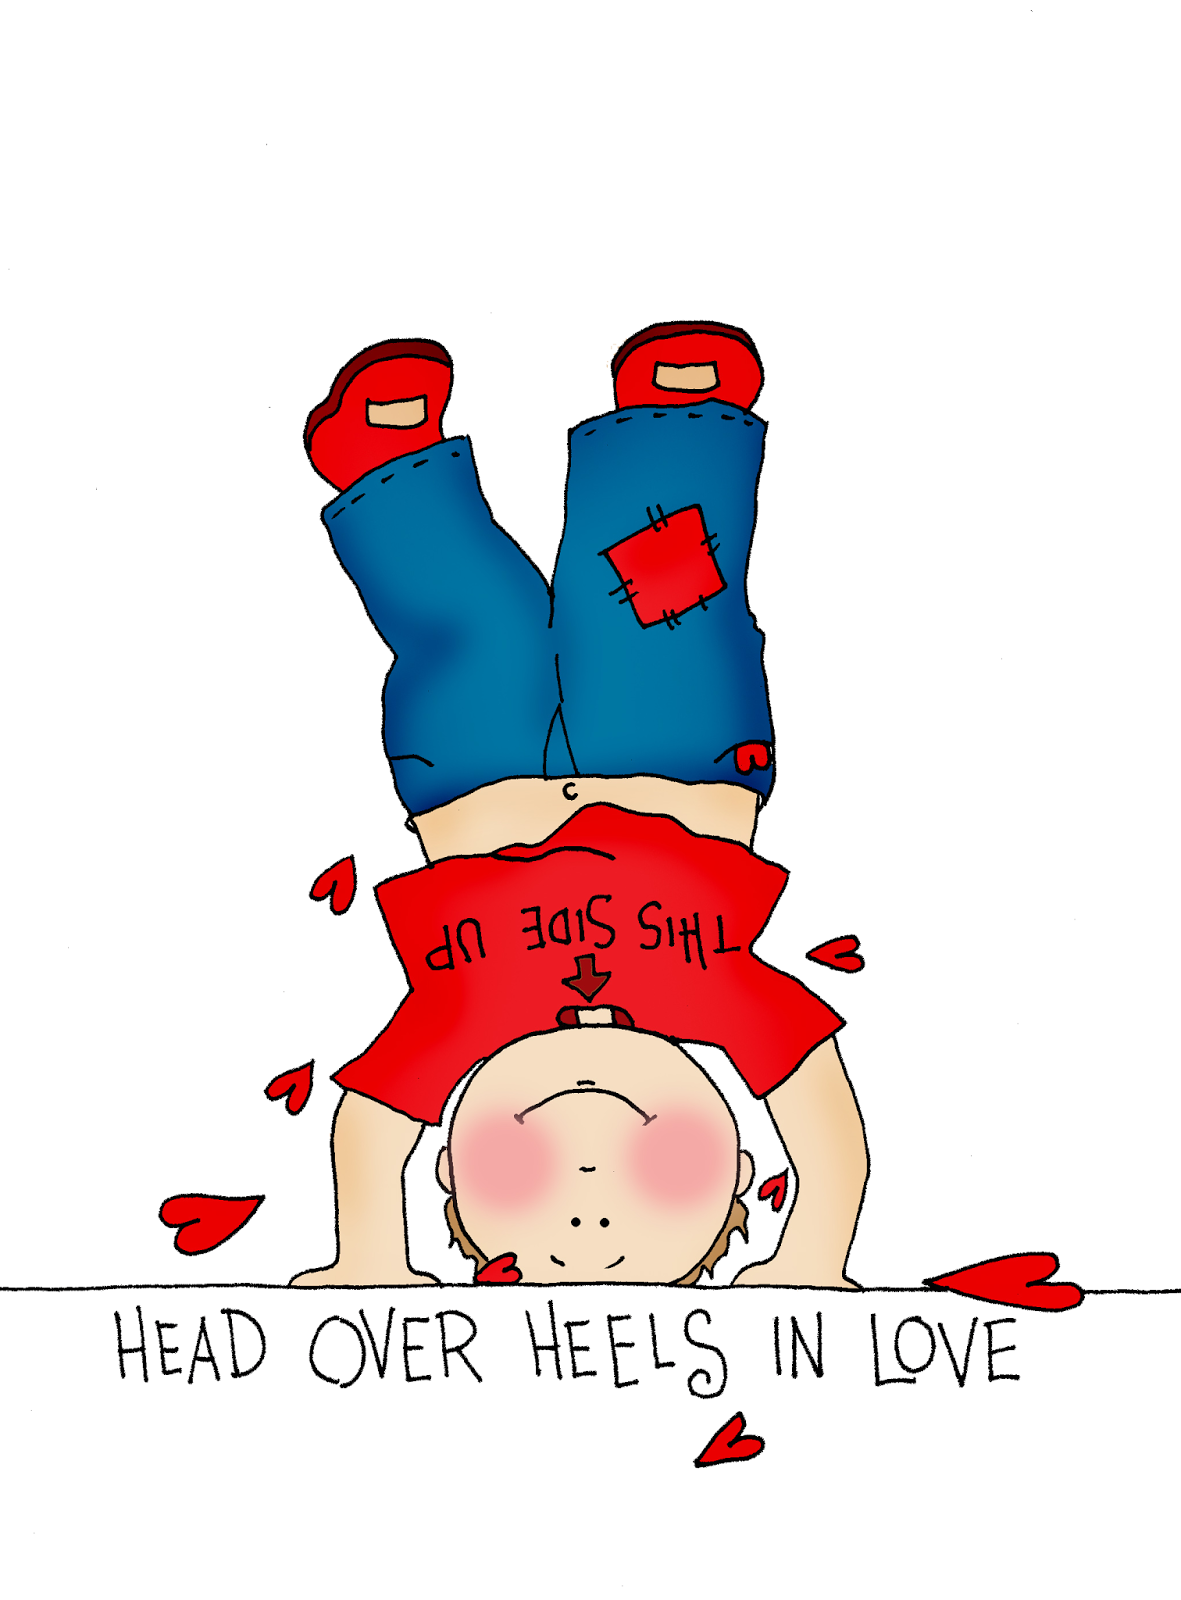 Over Heels In Love